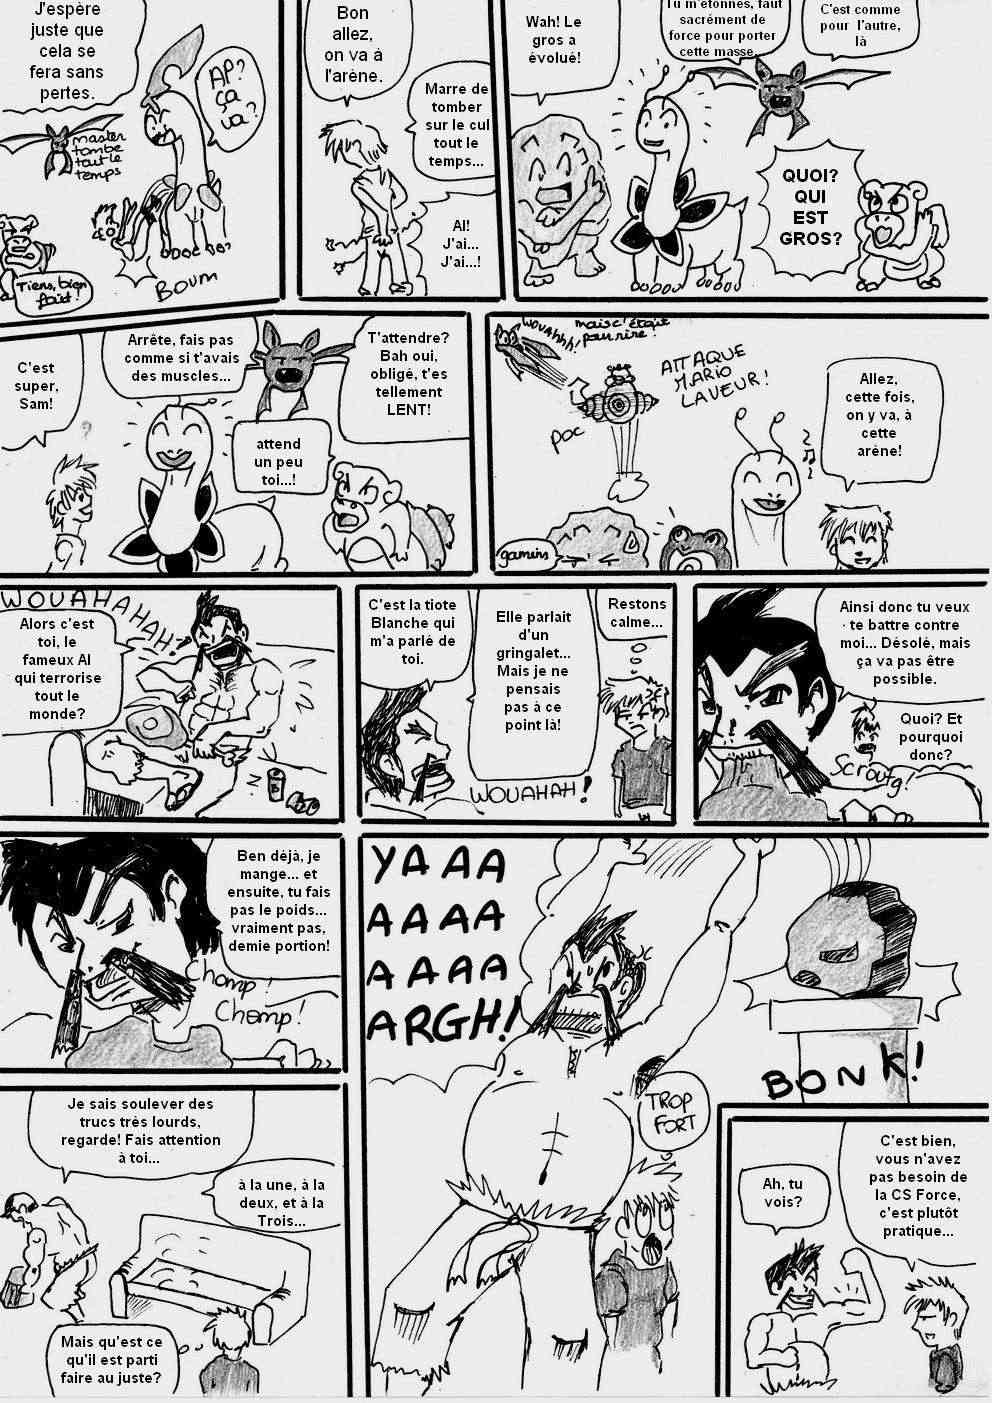 [Argent] shewolf's comic nuz - Page 16 Planch16